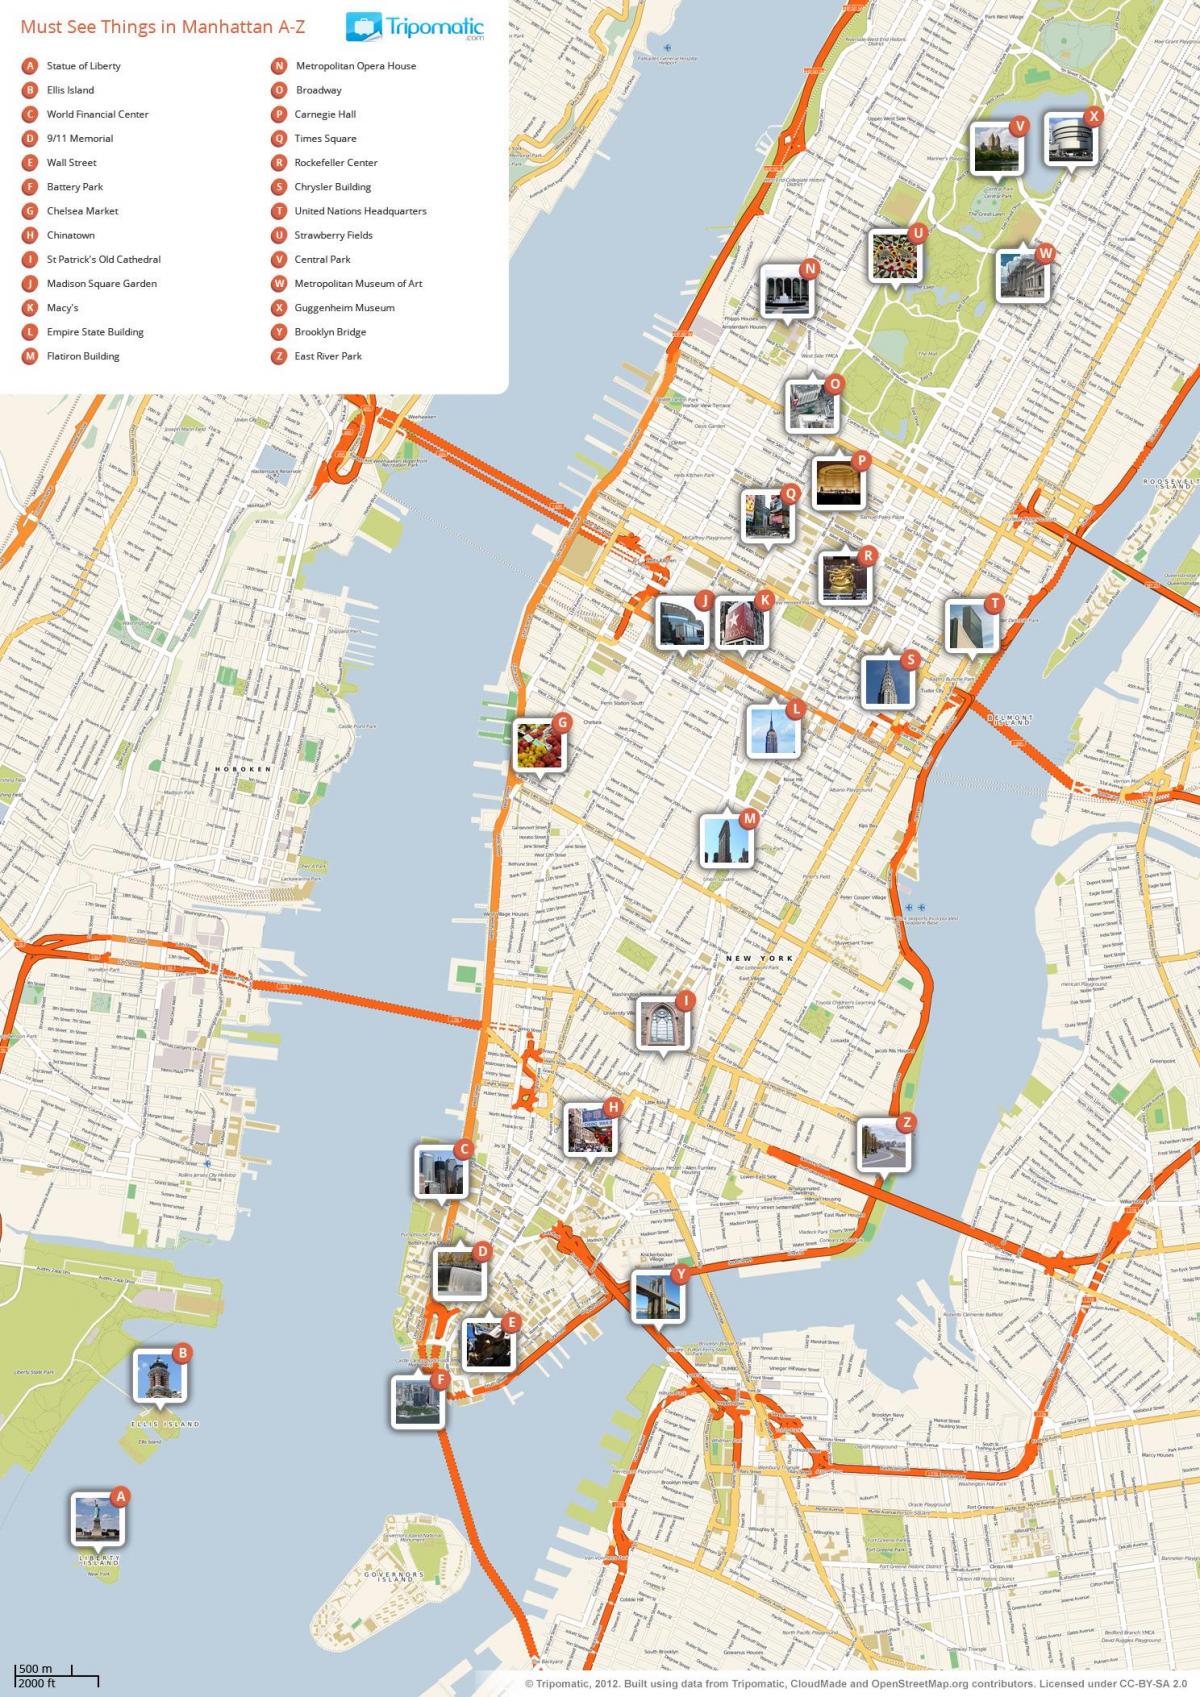 mapa de Manhattan mostrando atraccións turísticas